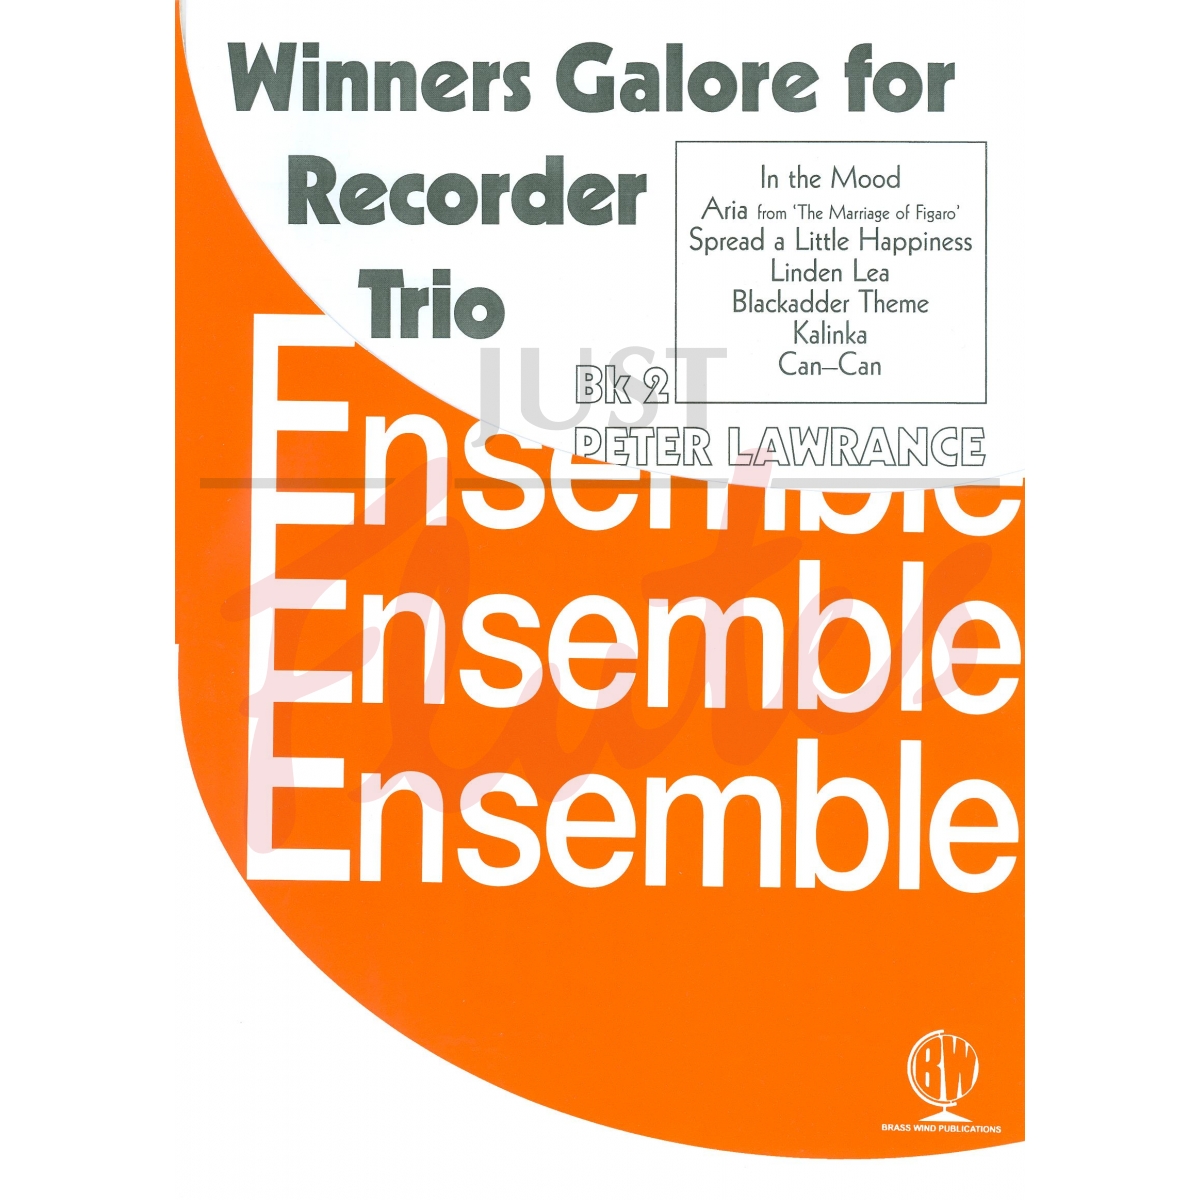 Winners Galore for Recorder Trio Book 2